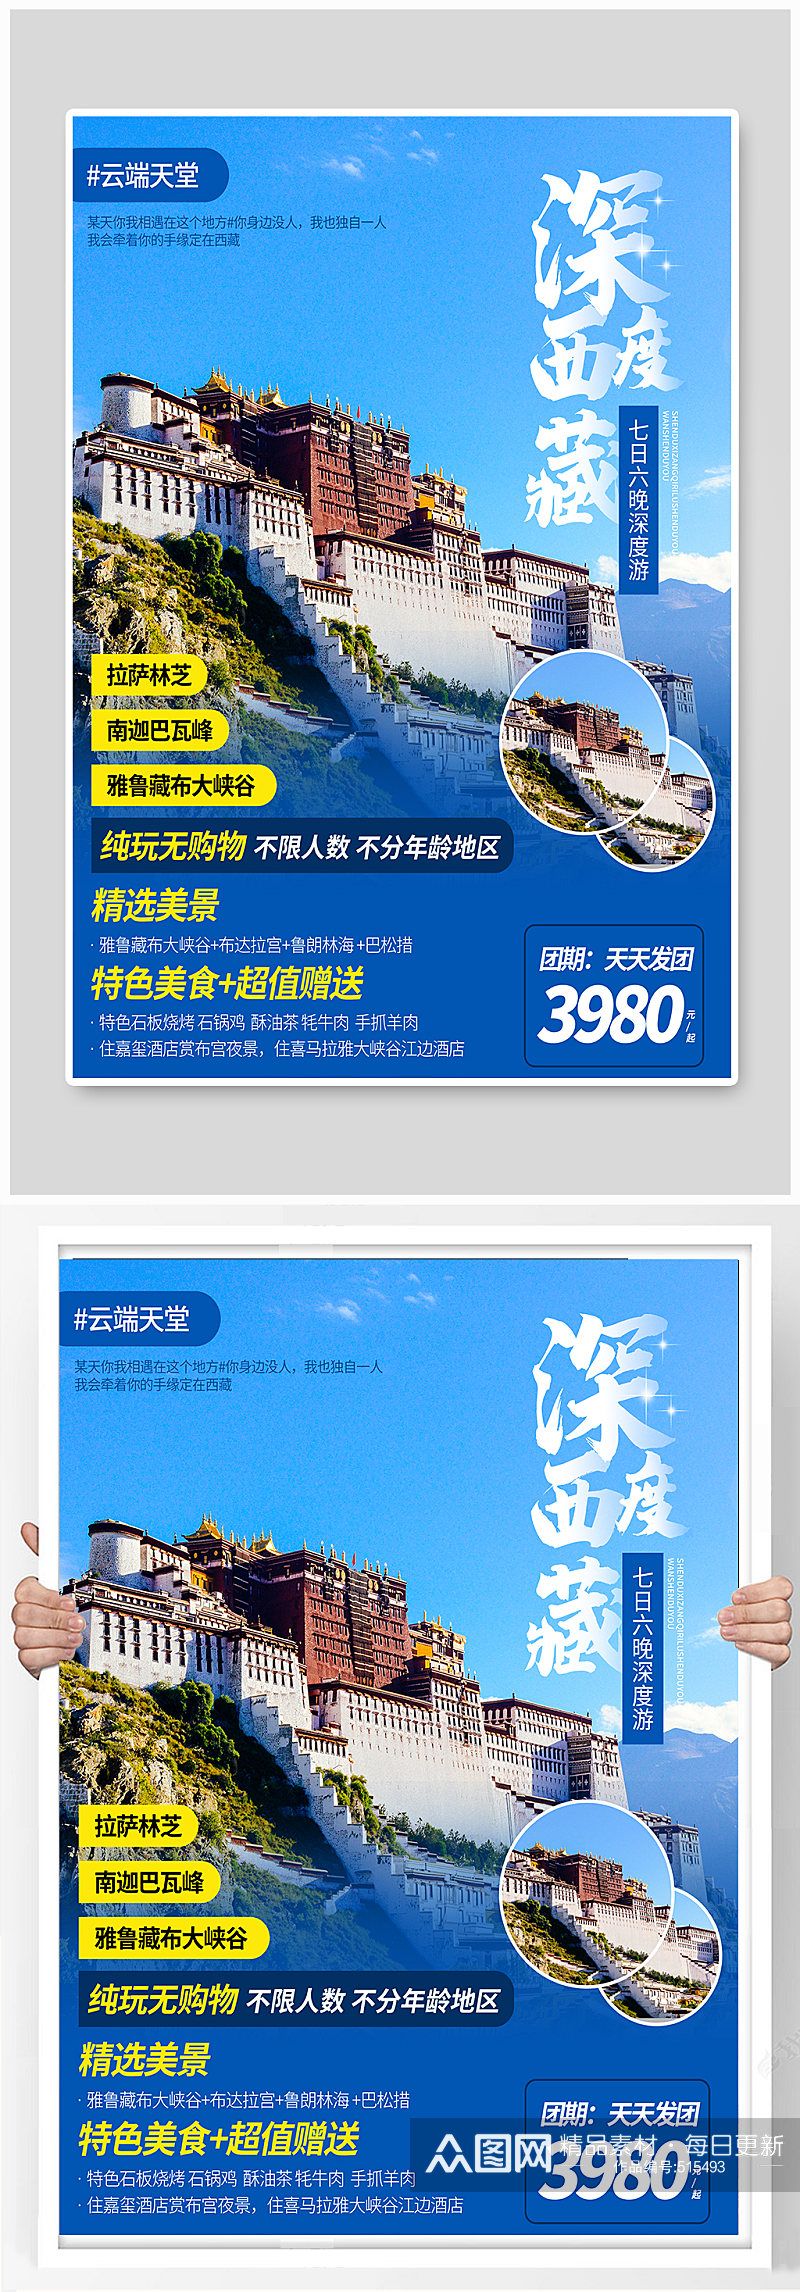 西藏旅行社旅游海报促销旅游单页素材